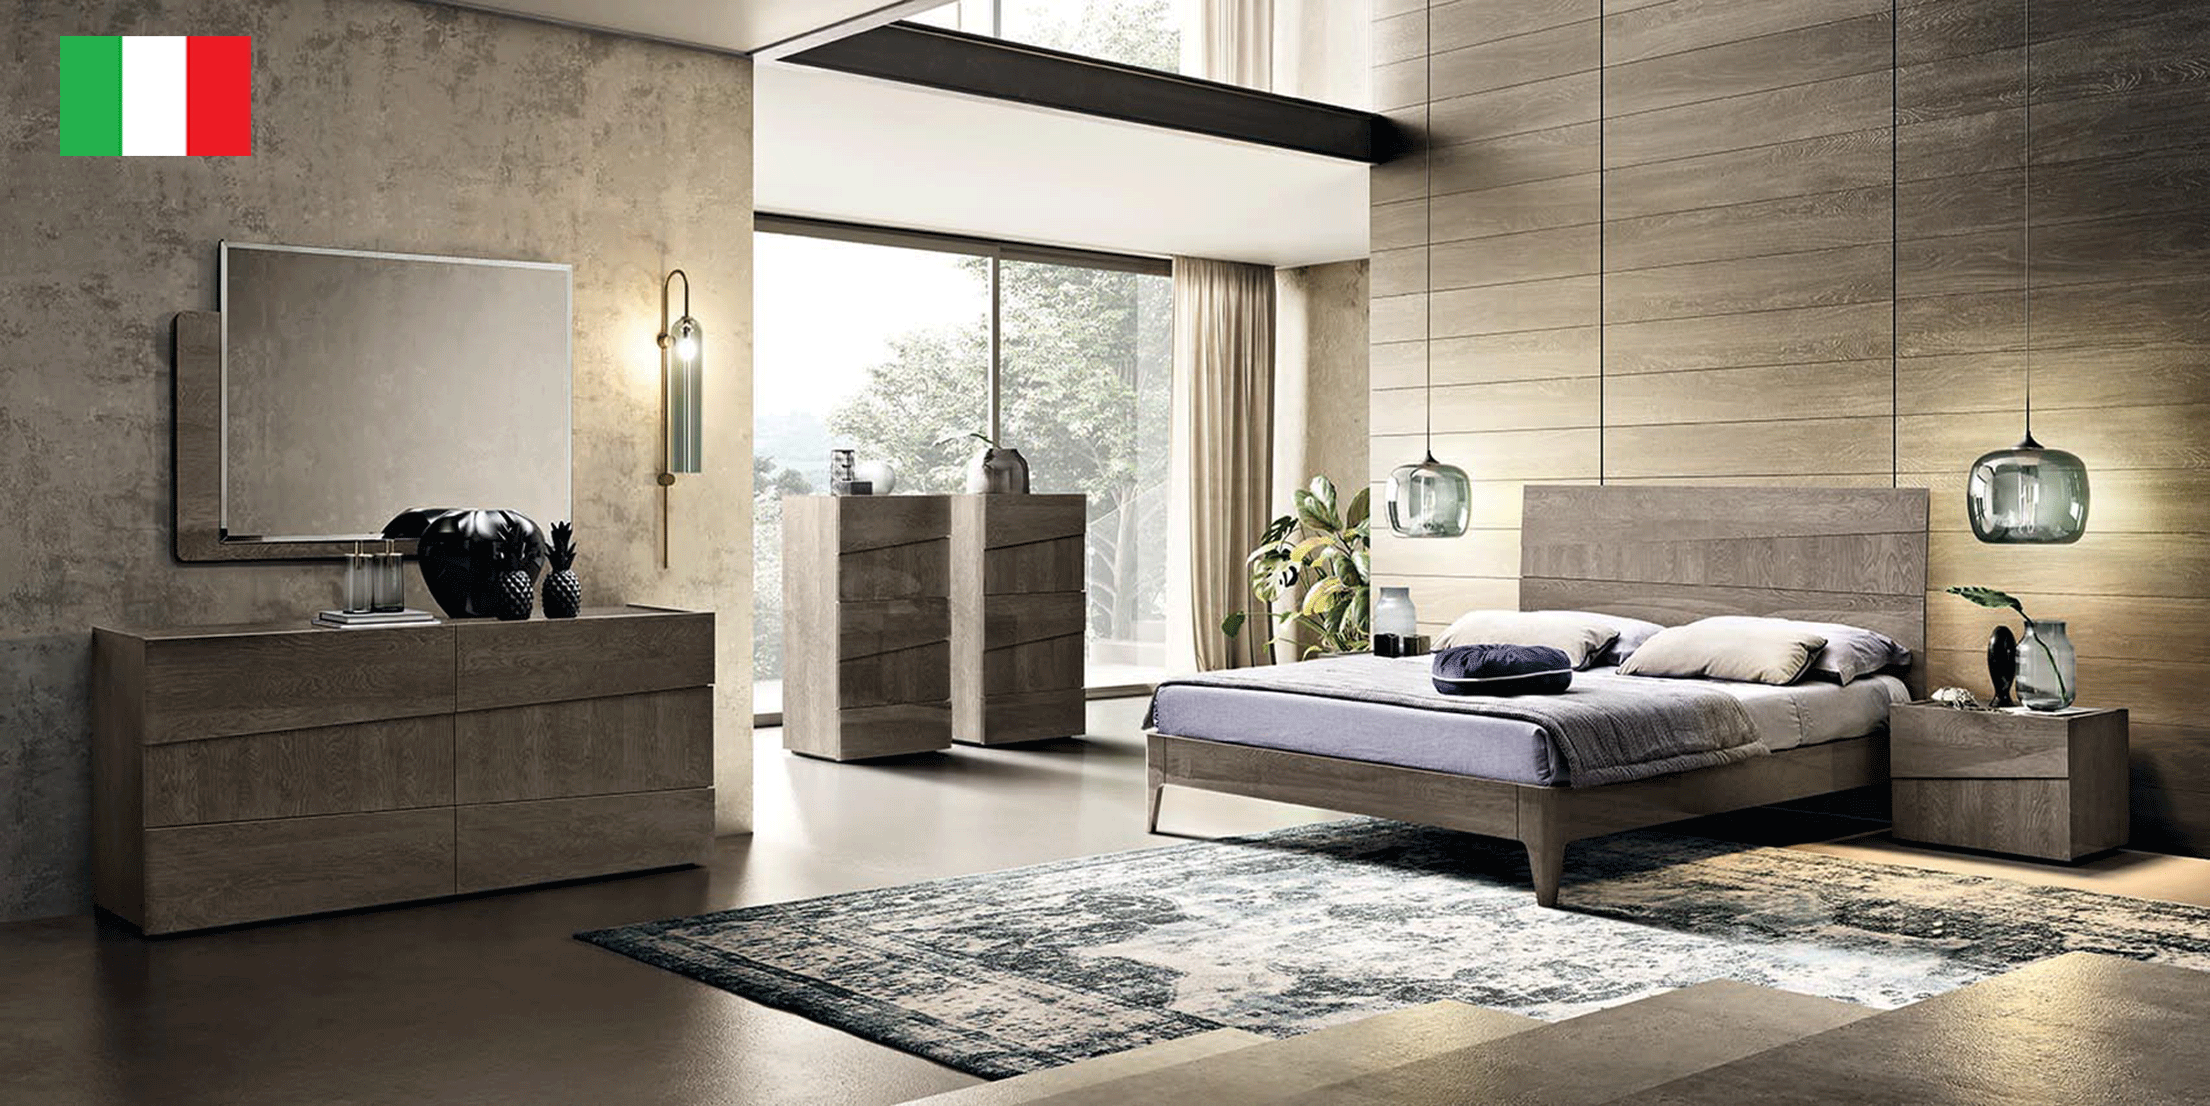 Brands Garcia Sabate, Modern Bedroom Spain Tekno Bedroom